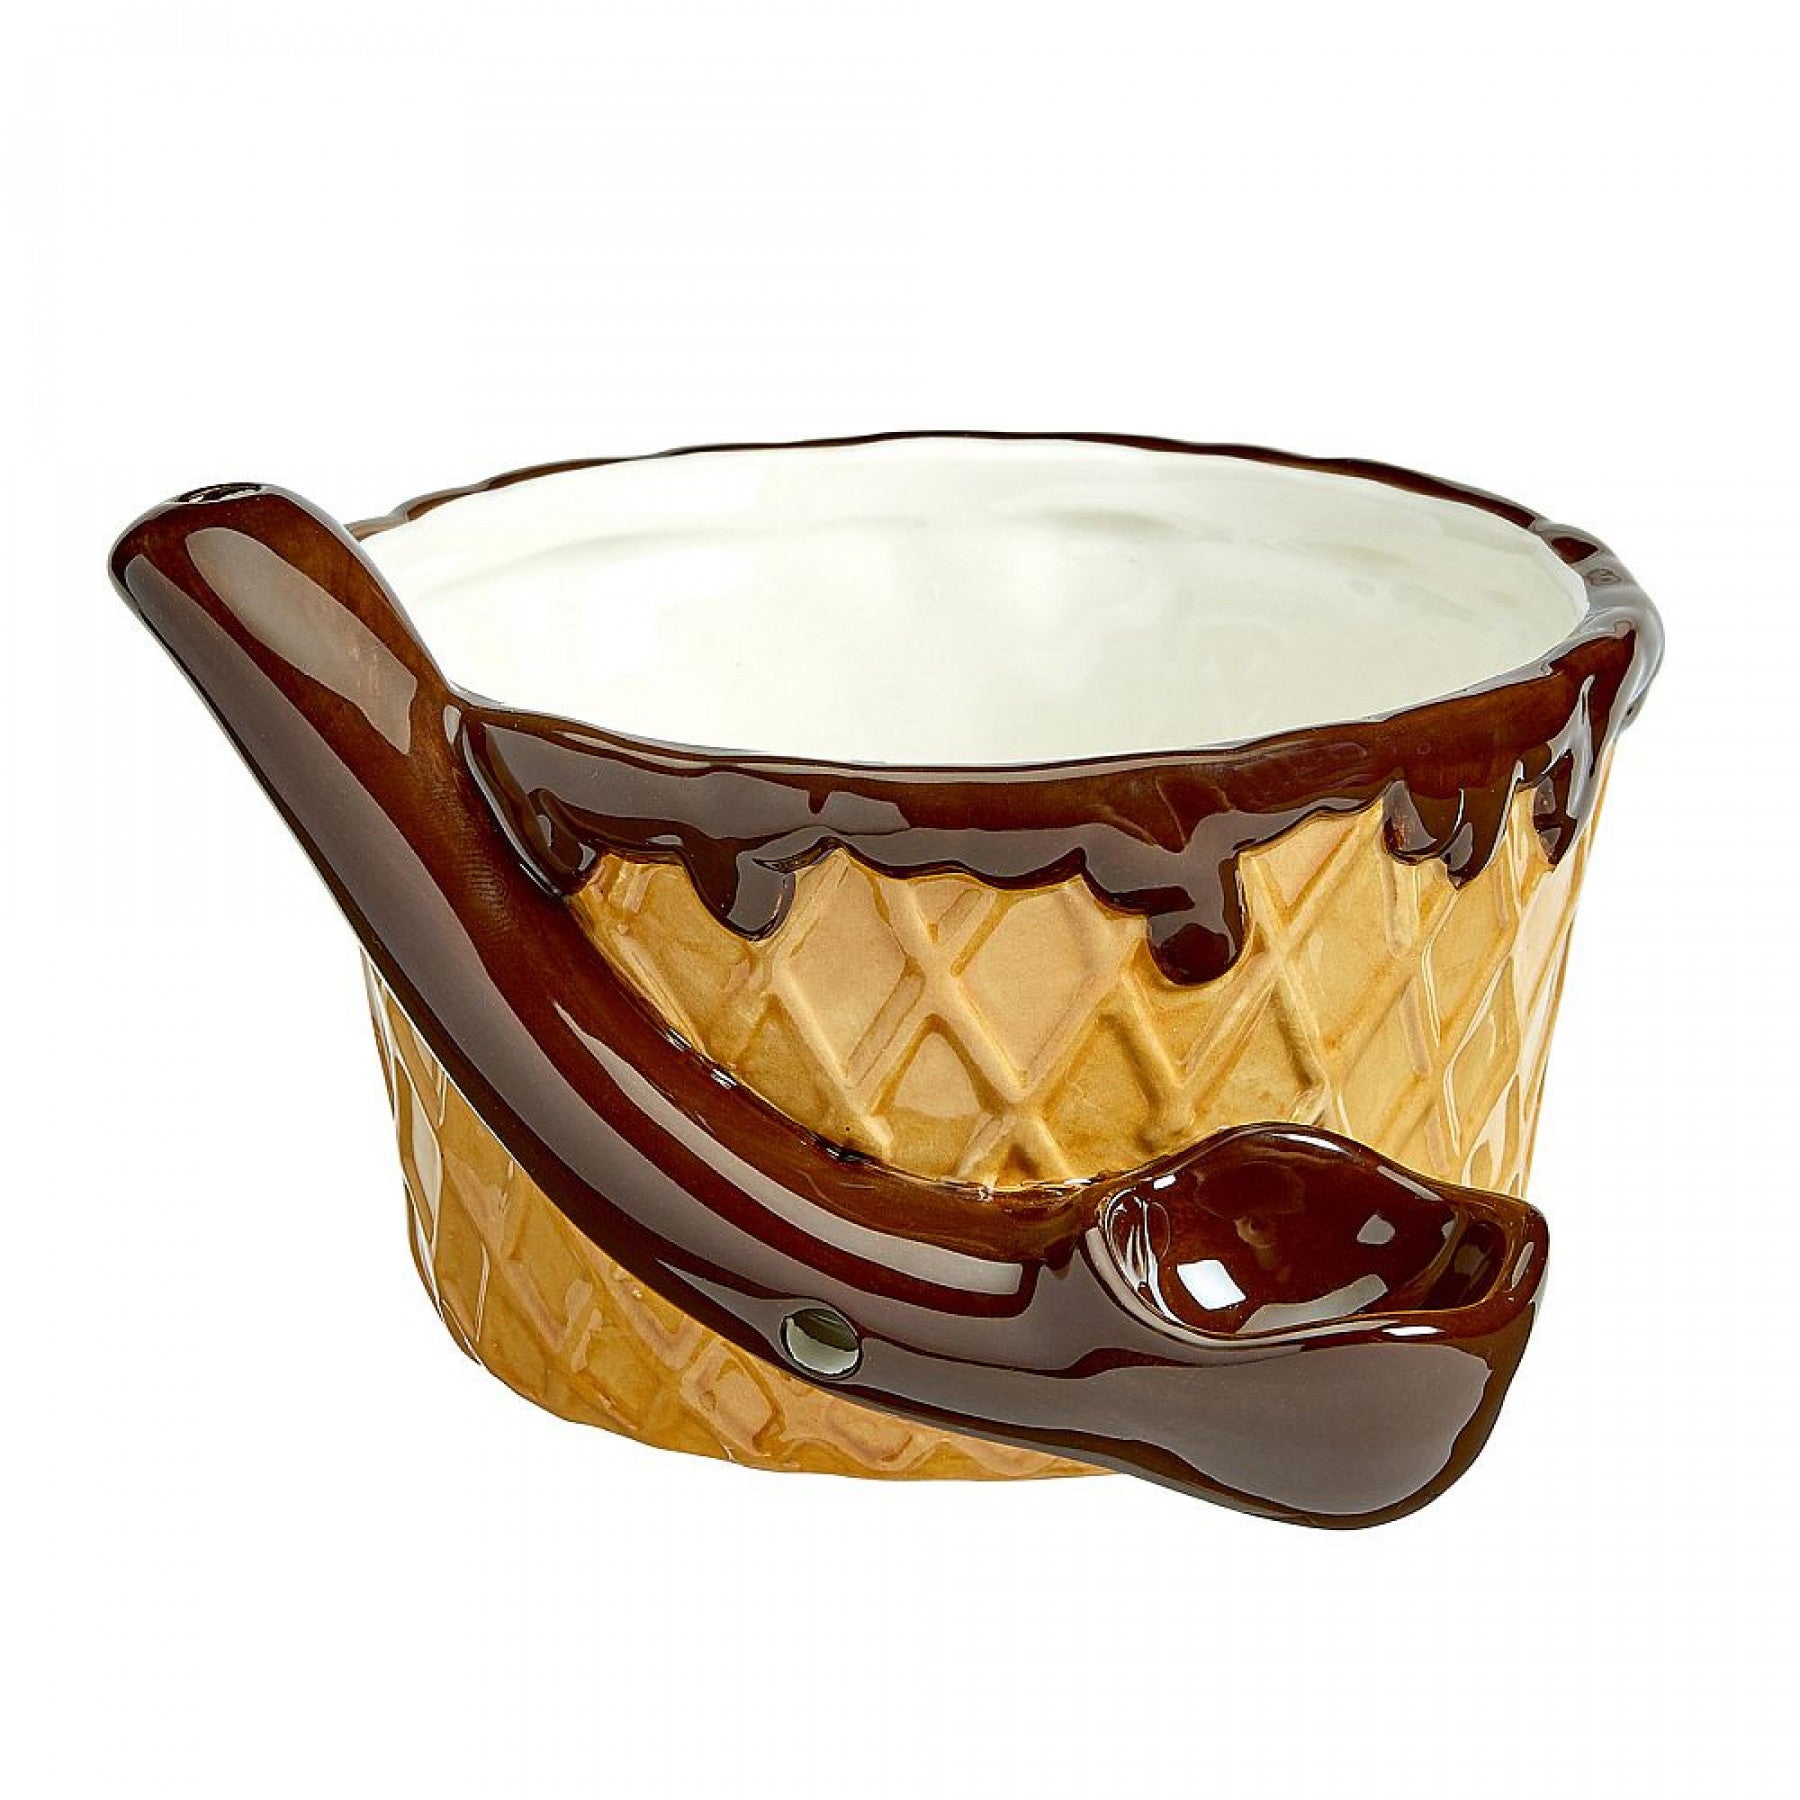 ceramic ice cream bowl with built in pipe